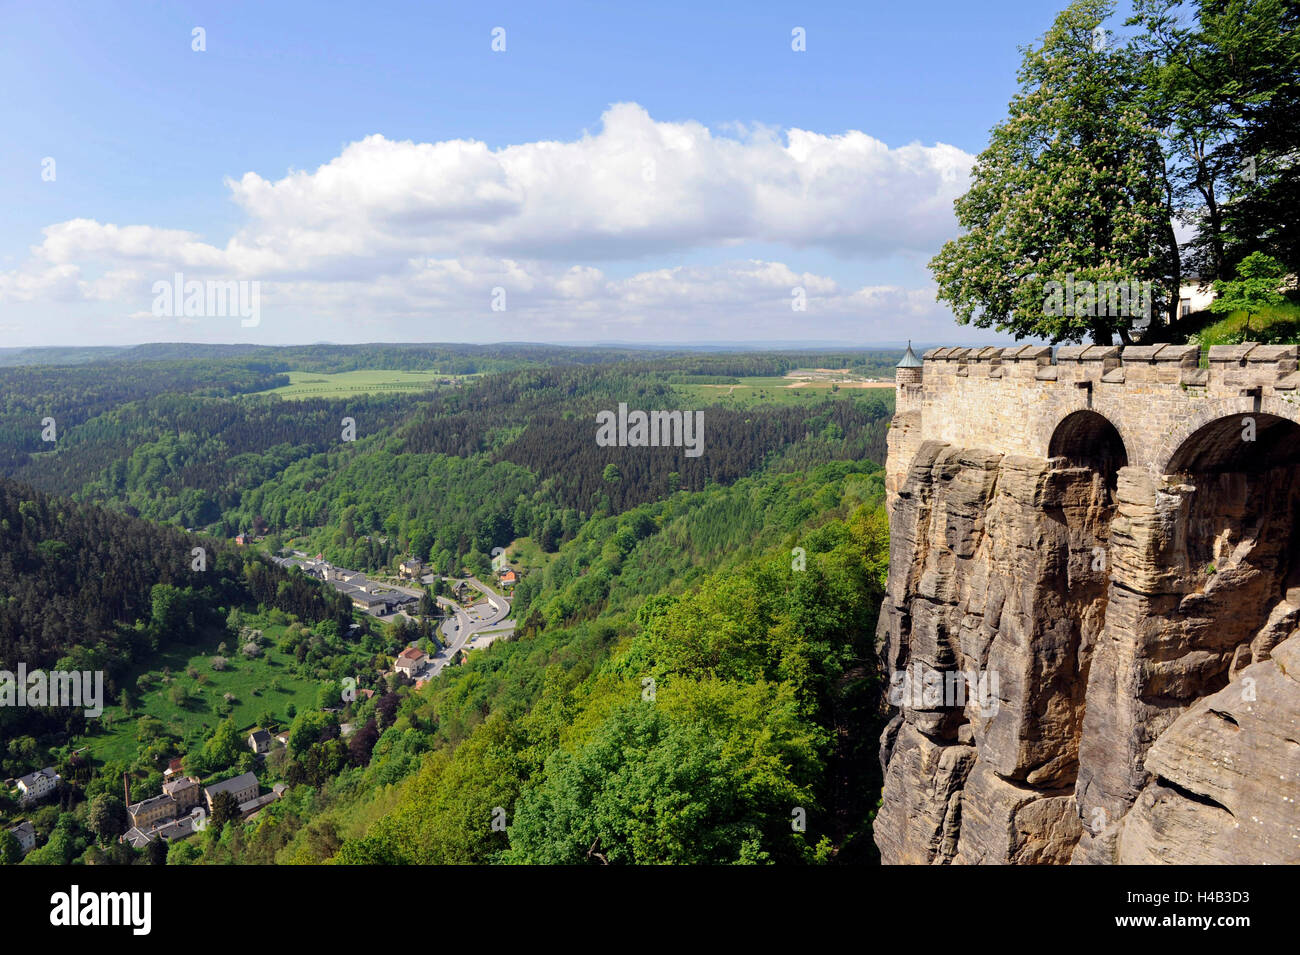 Vista della parete di tamponamento, fortezza Königstein, rinforzo, dungeon, scenario, incontaminata, parco nazionale Svizzera Sassone, Svizzera sassone Foto Stock